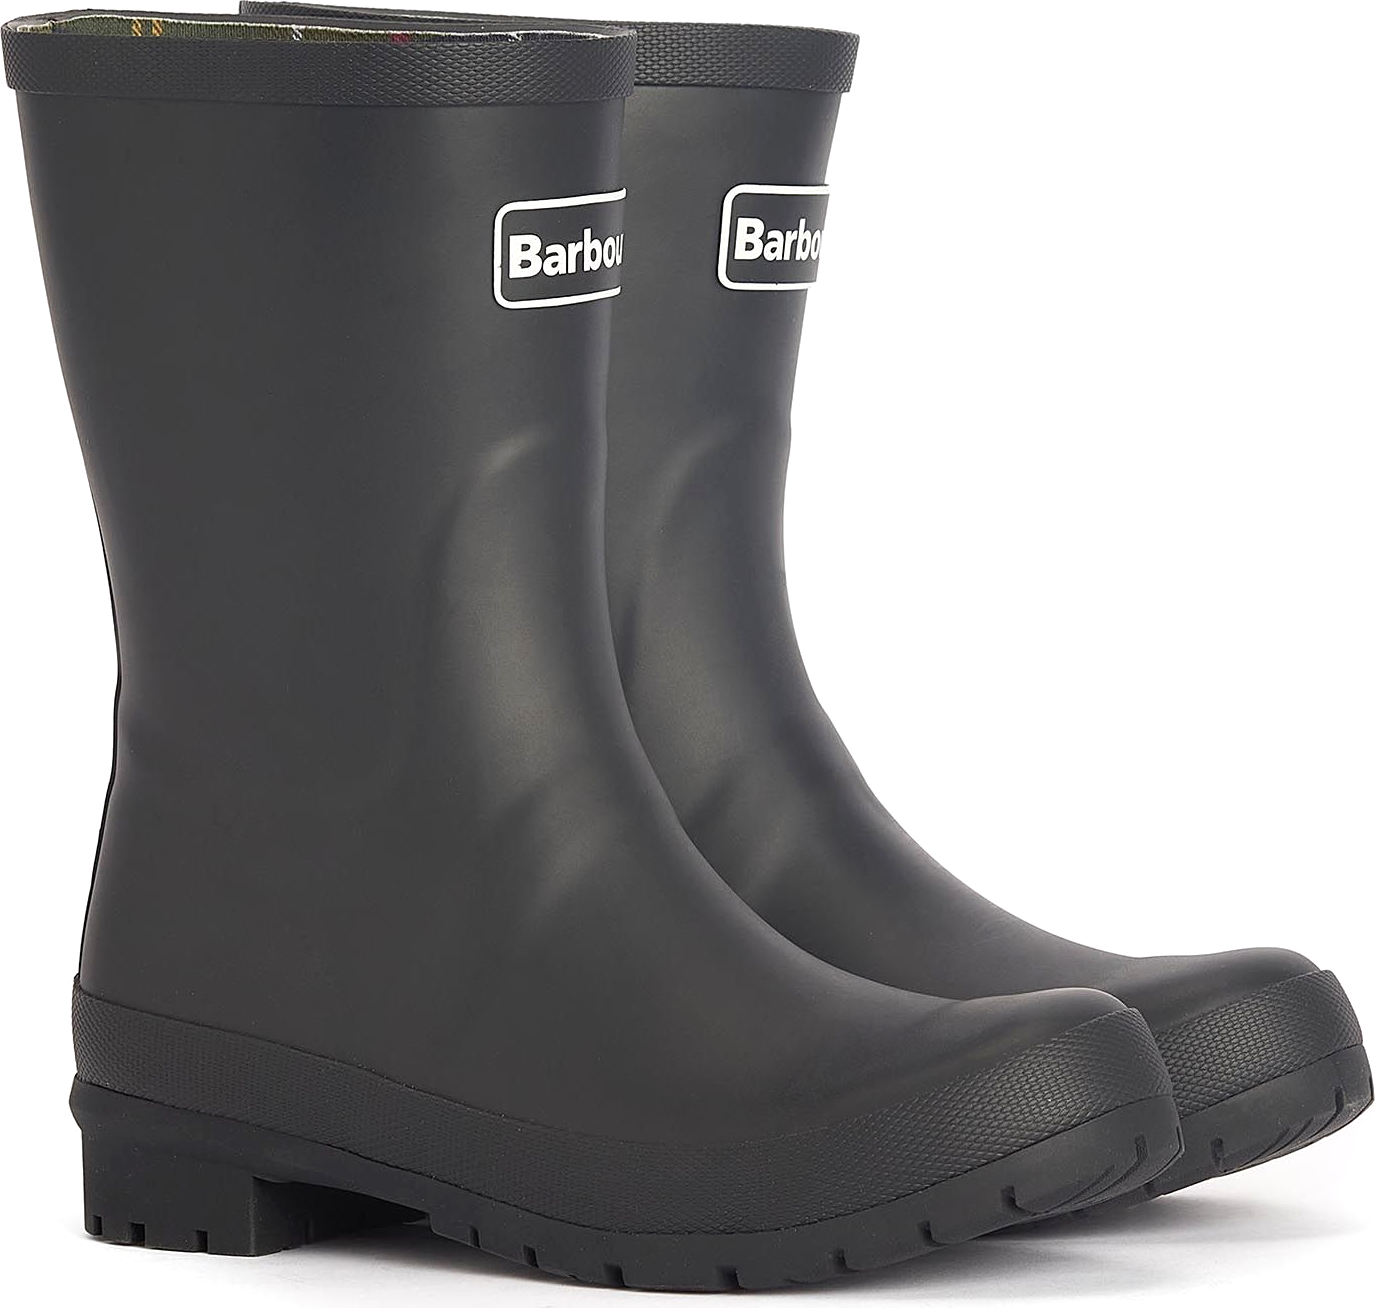 Barbour Women’s Banbury Wellington Boots Black